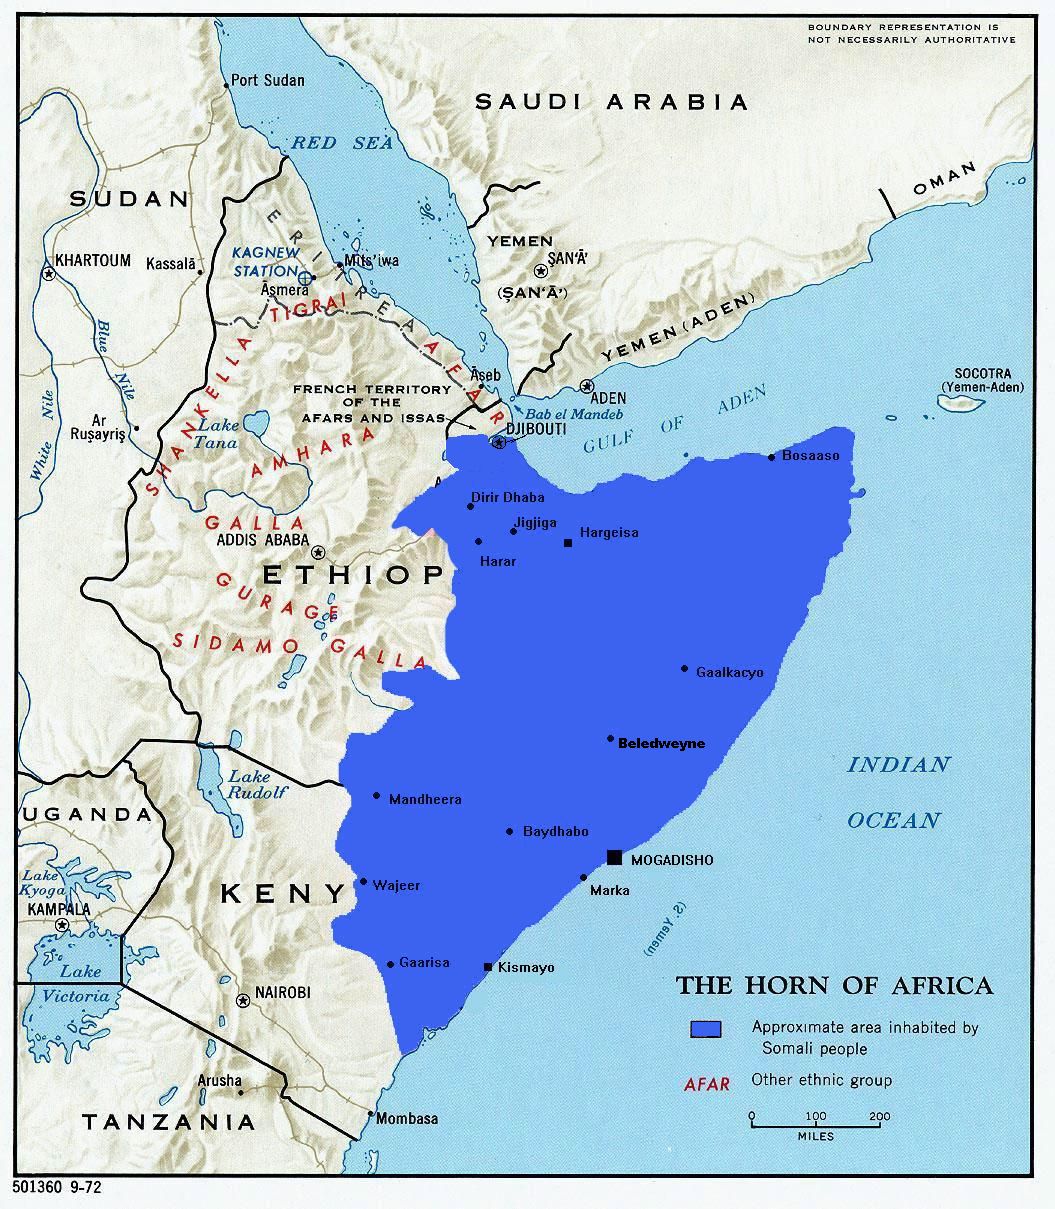 Terror Free Somalia Foundation: Somalia: The Ethiopian Factor part # 3